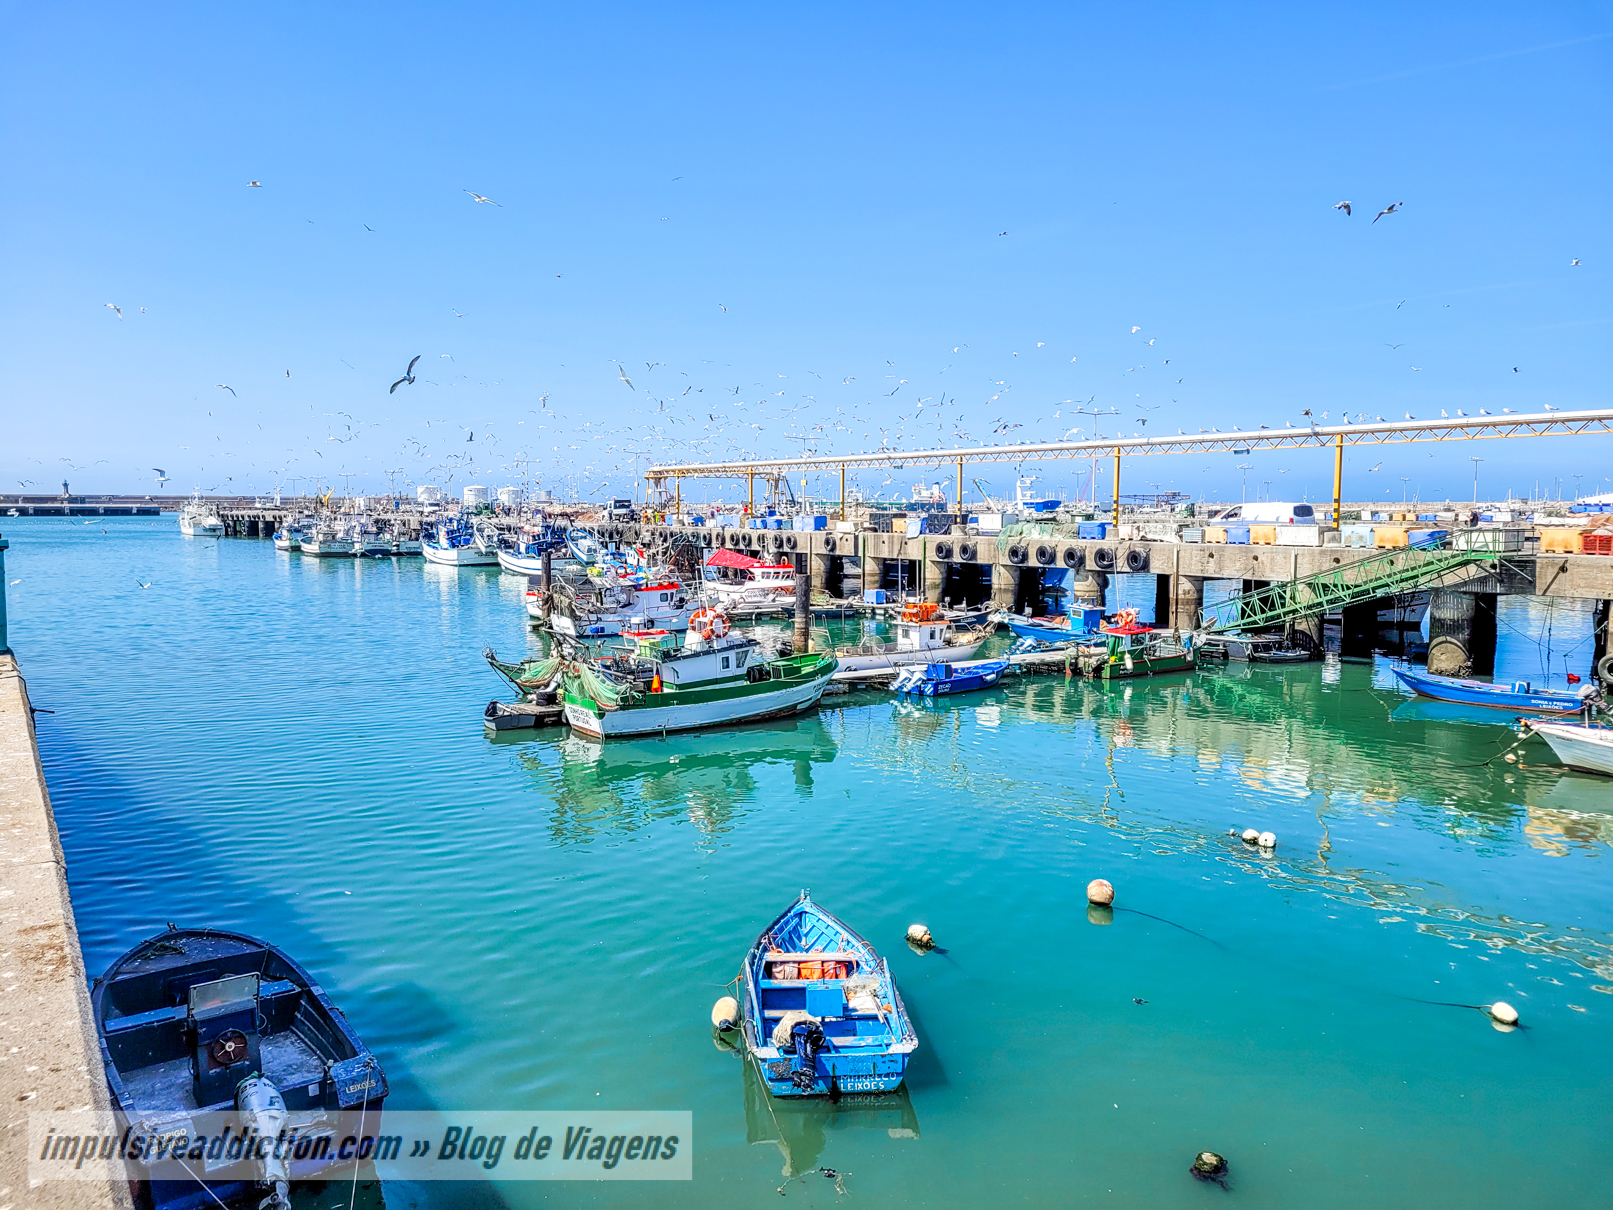 Fishing Docks of Matosinhos